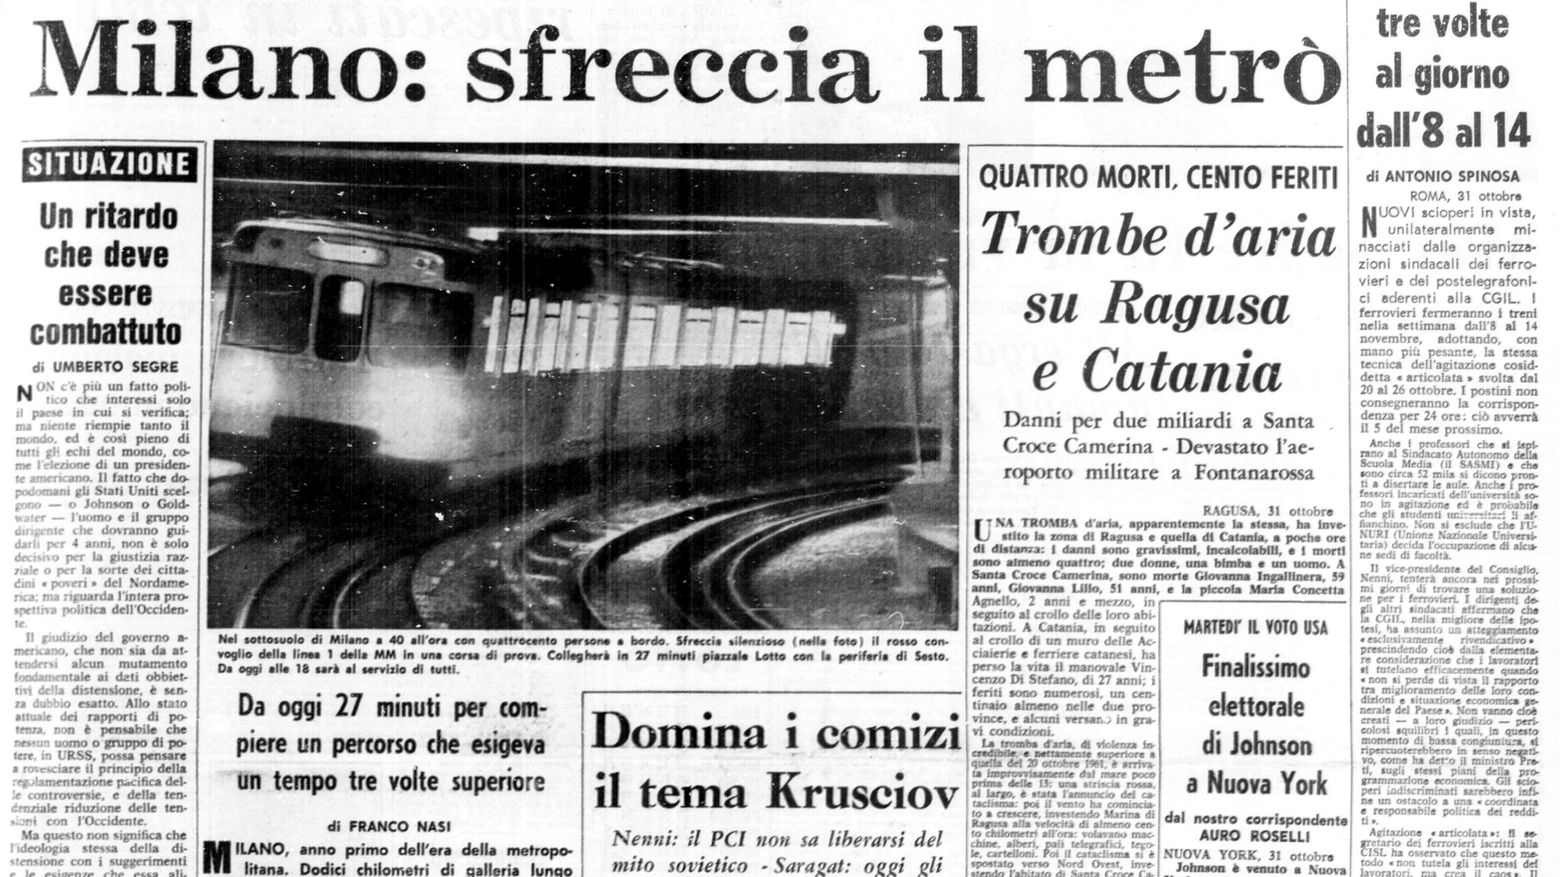 Prima pagine de Il Giorno l'1° novembre 1964, inaugurazione metropolitana rossa